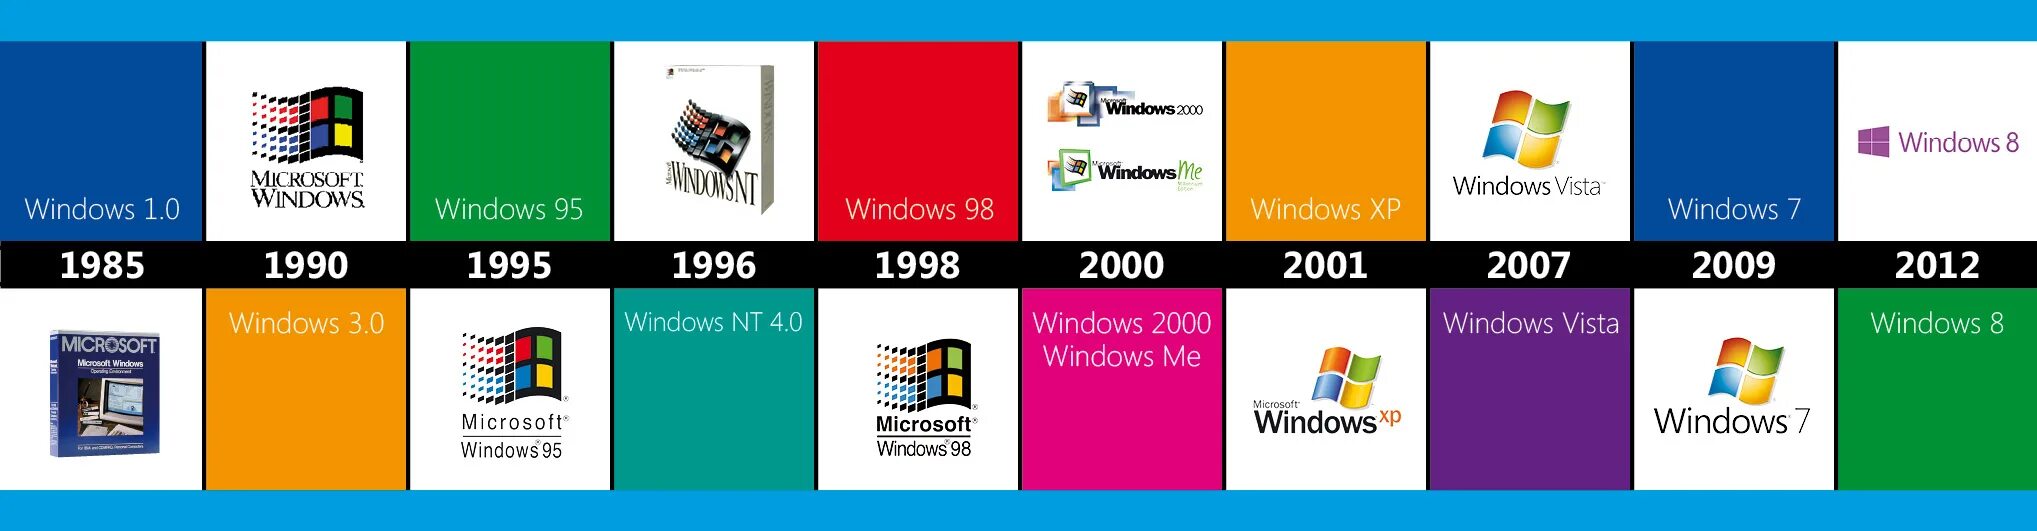 Операционная система Microsoft Windows. Хронология операционных систем Windows. Windows операционные системы Microsoft. Эволюция операционных систем Windows.